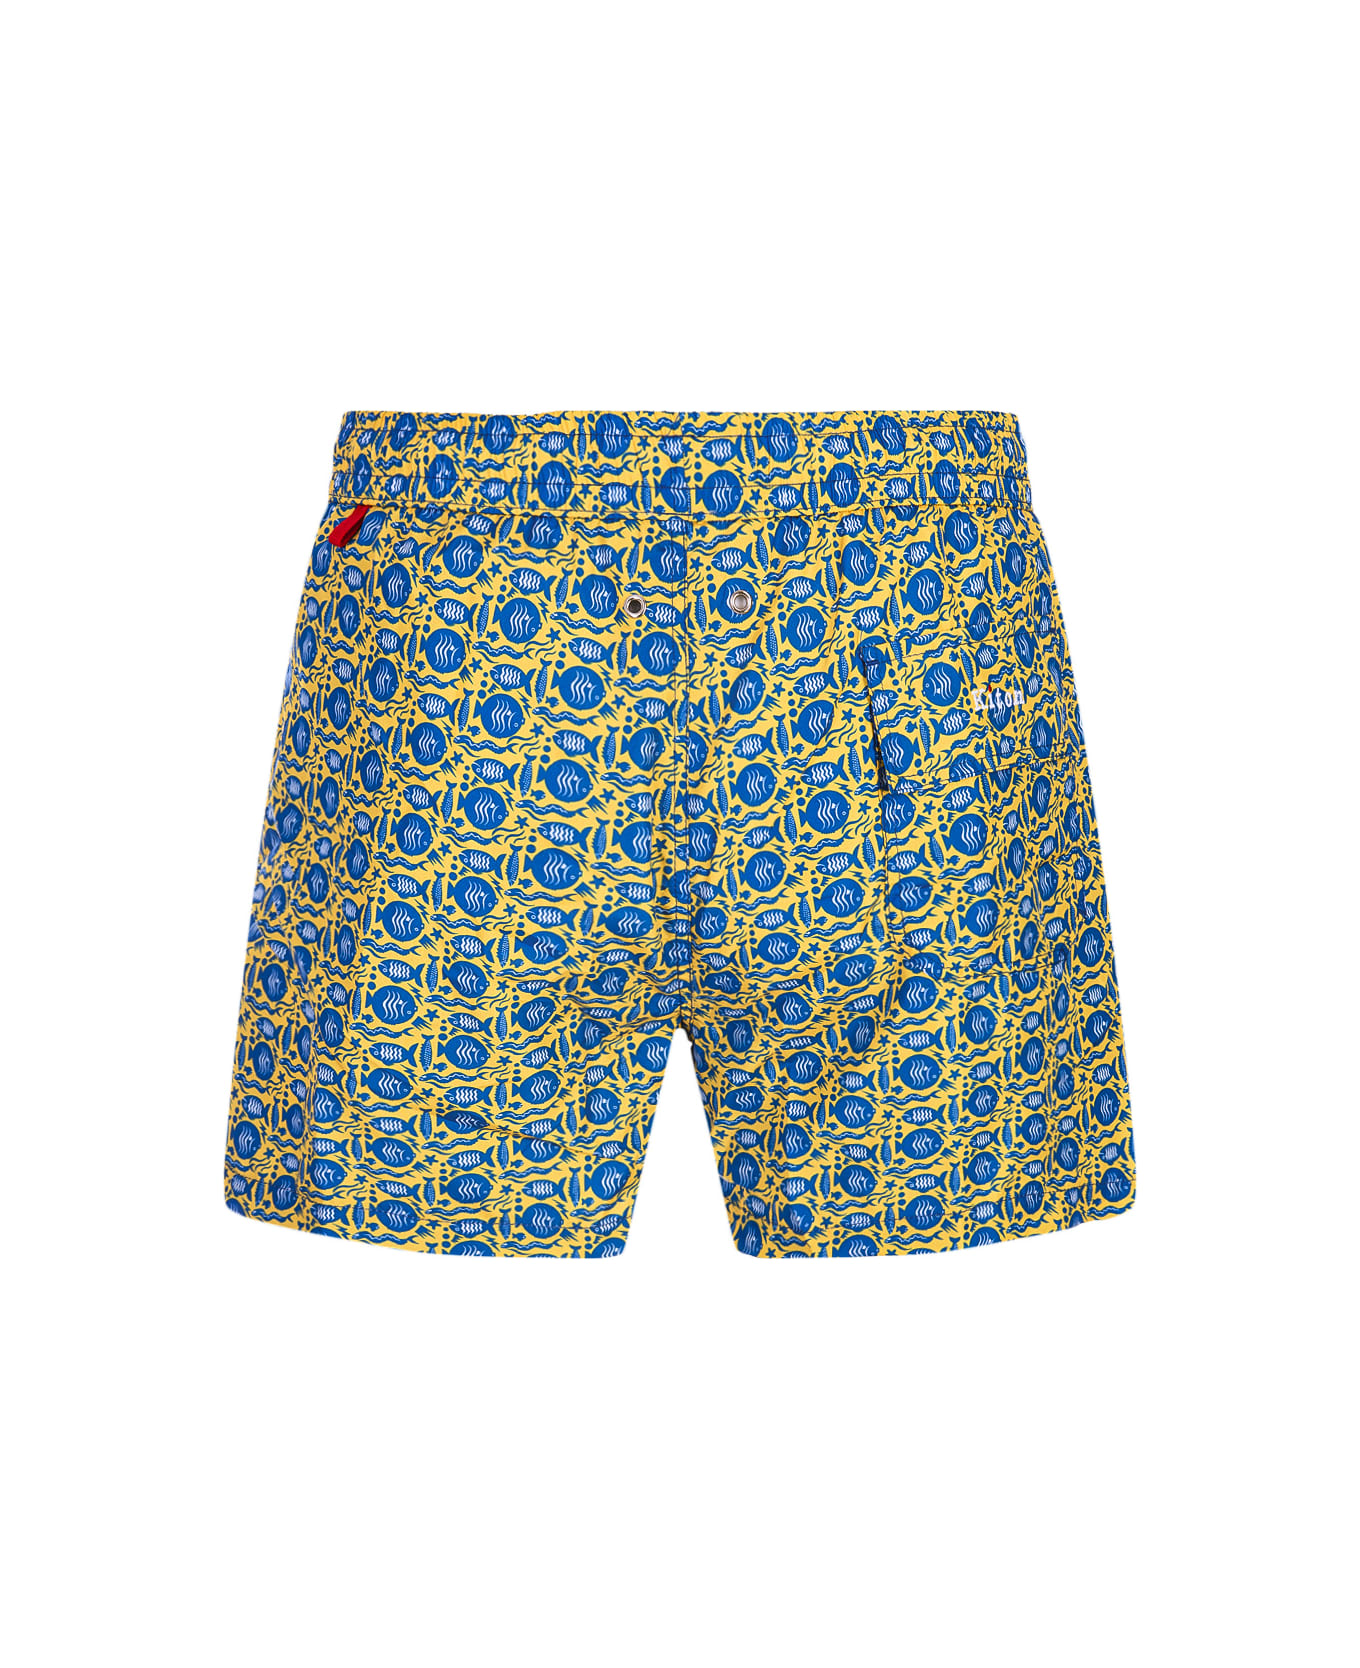 Kiton Yellow Swim Shorts With Fish Pattern - Yellow